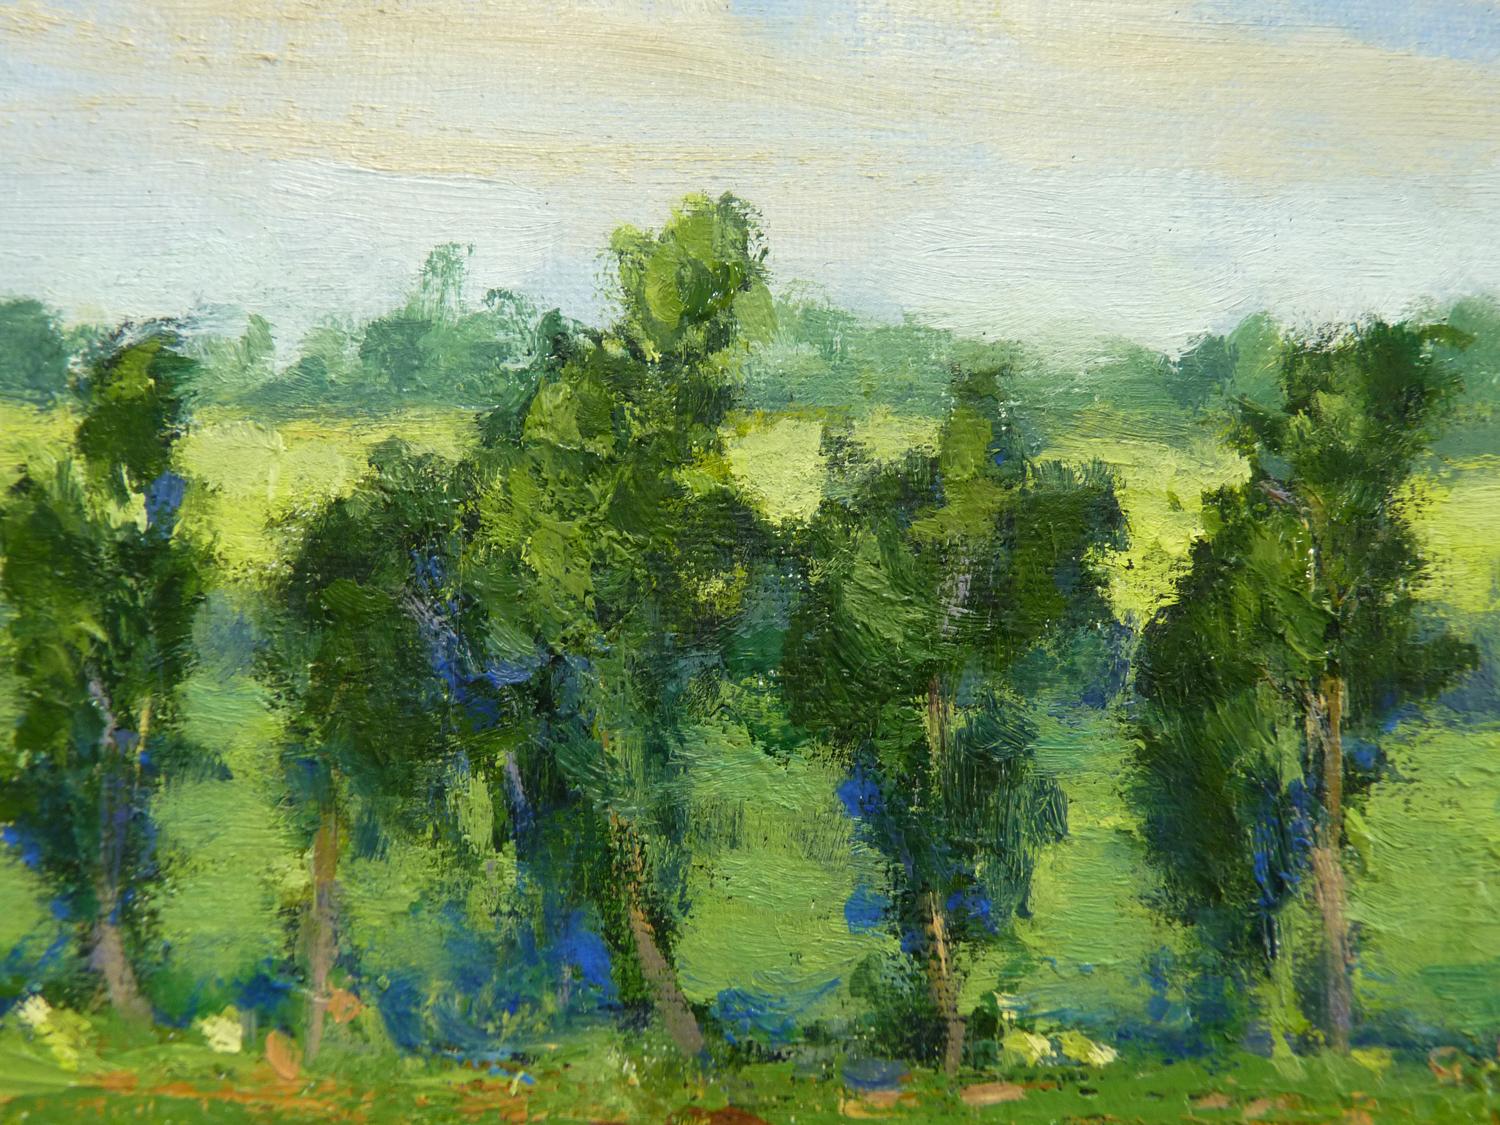 Summer Park Sketch No. 2 (Grün), Landscape Painting, von Elizabeth Garat